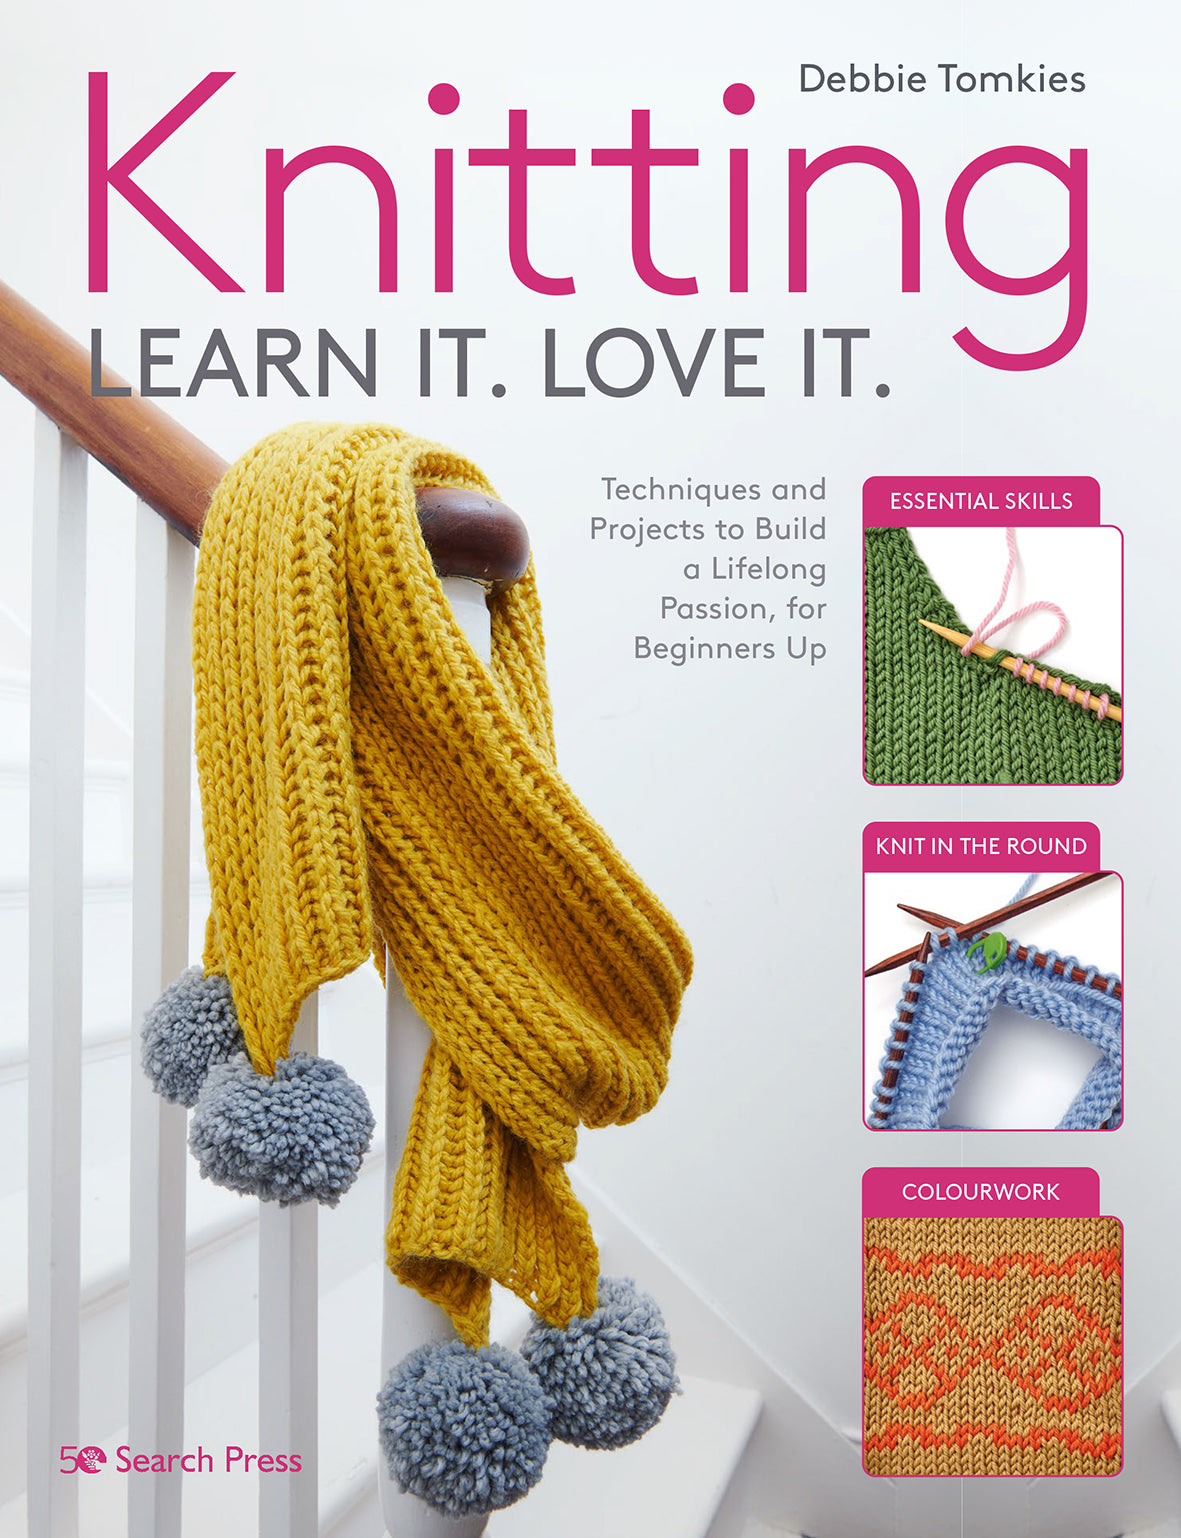 Knitting Learn it. Love it. by Debbie Tomkies